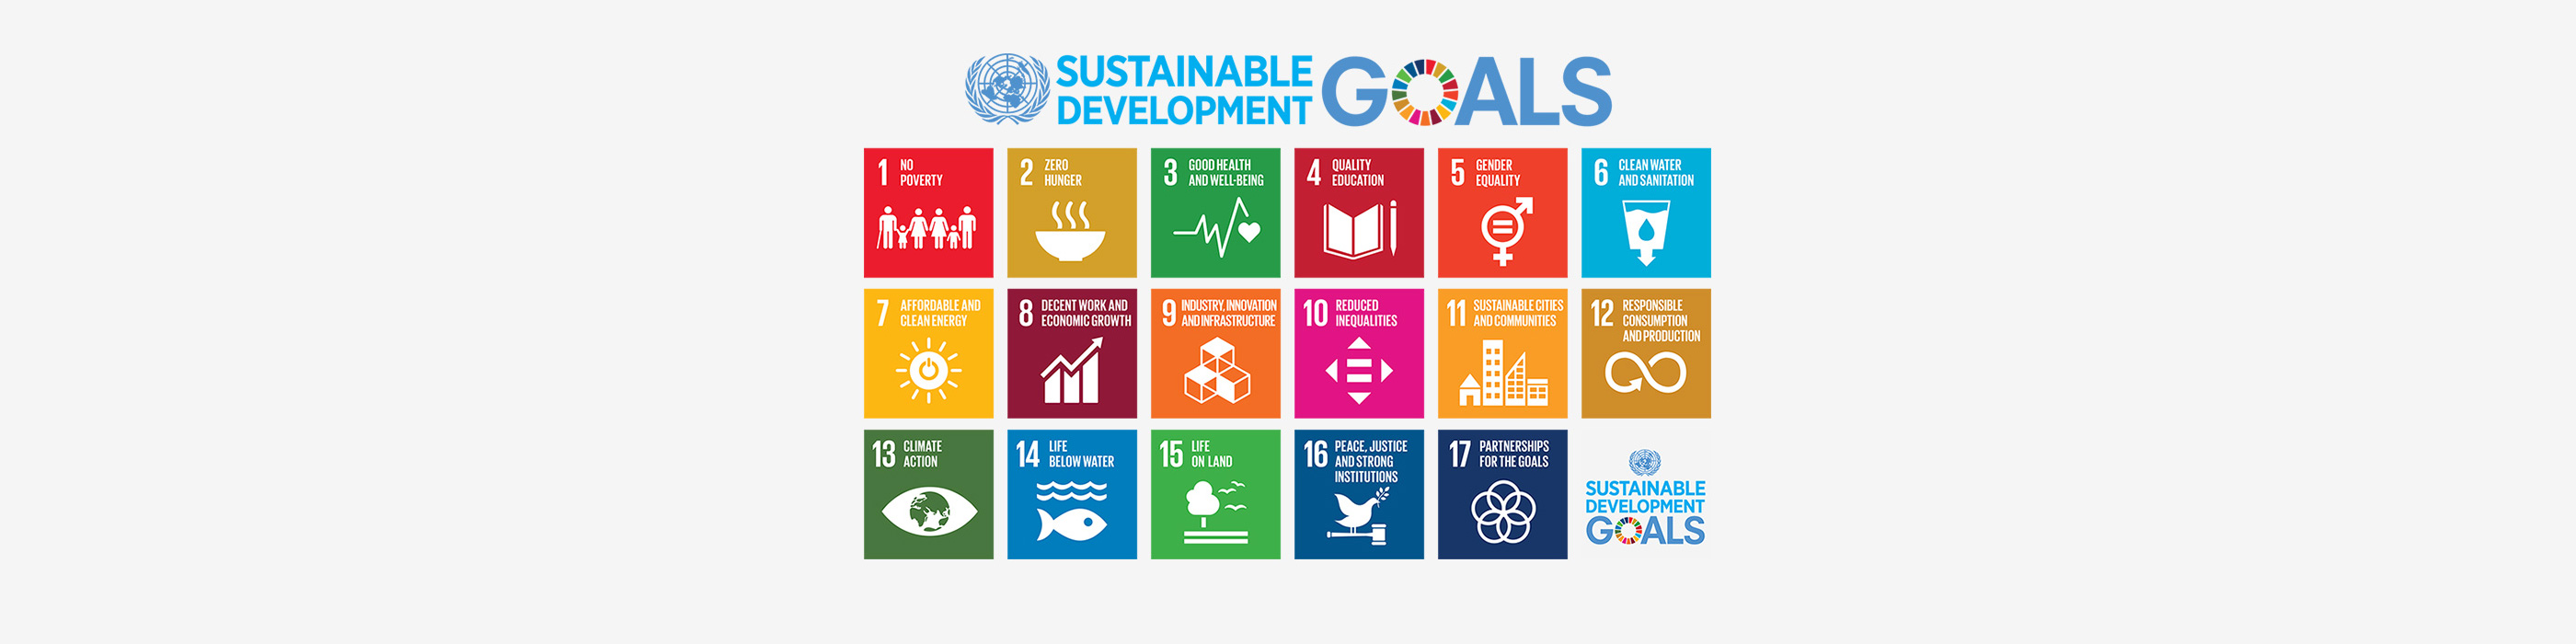 UN sustainable development goals illustration